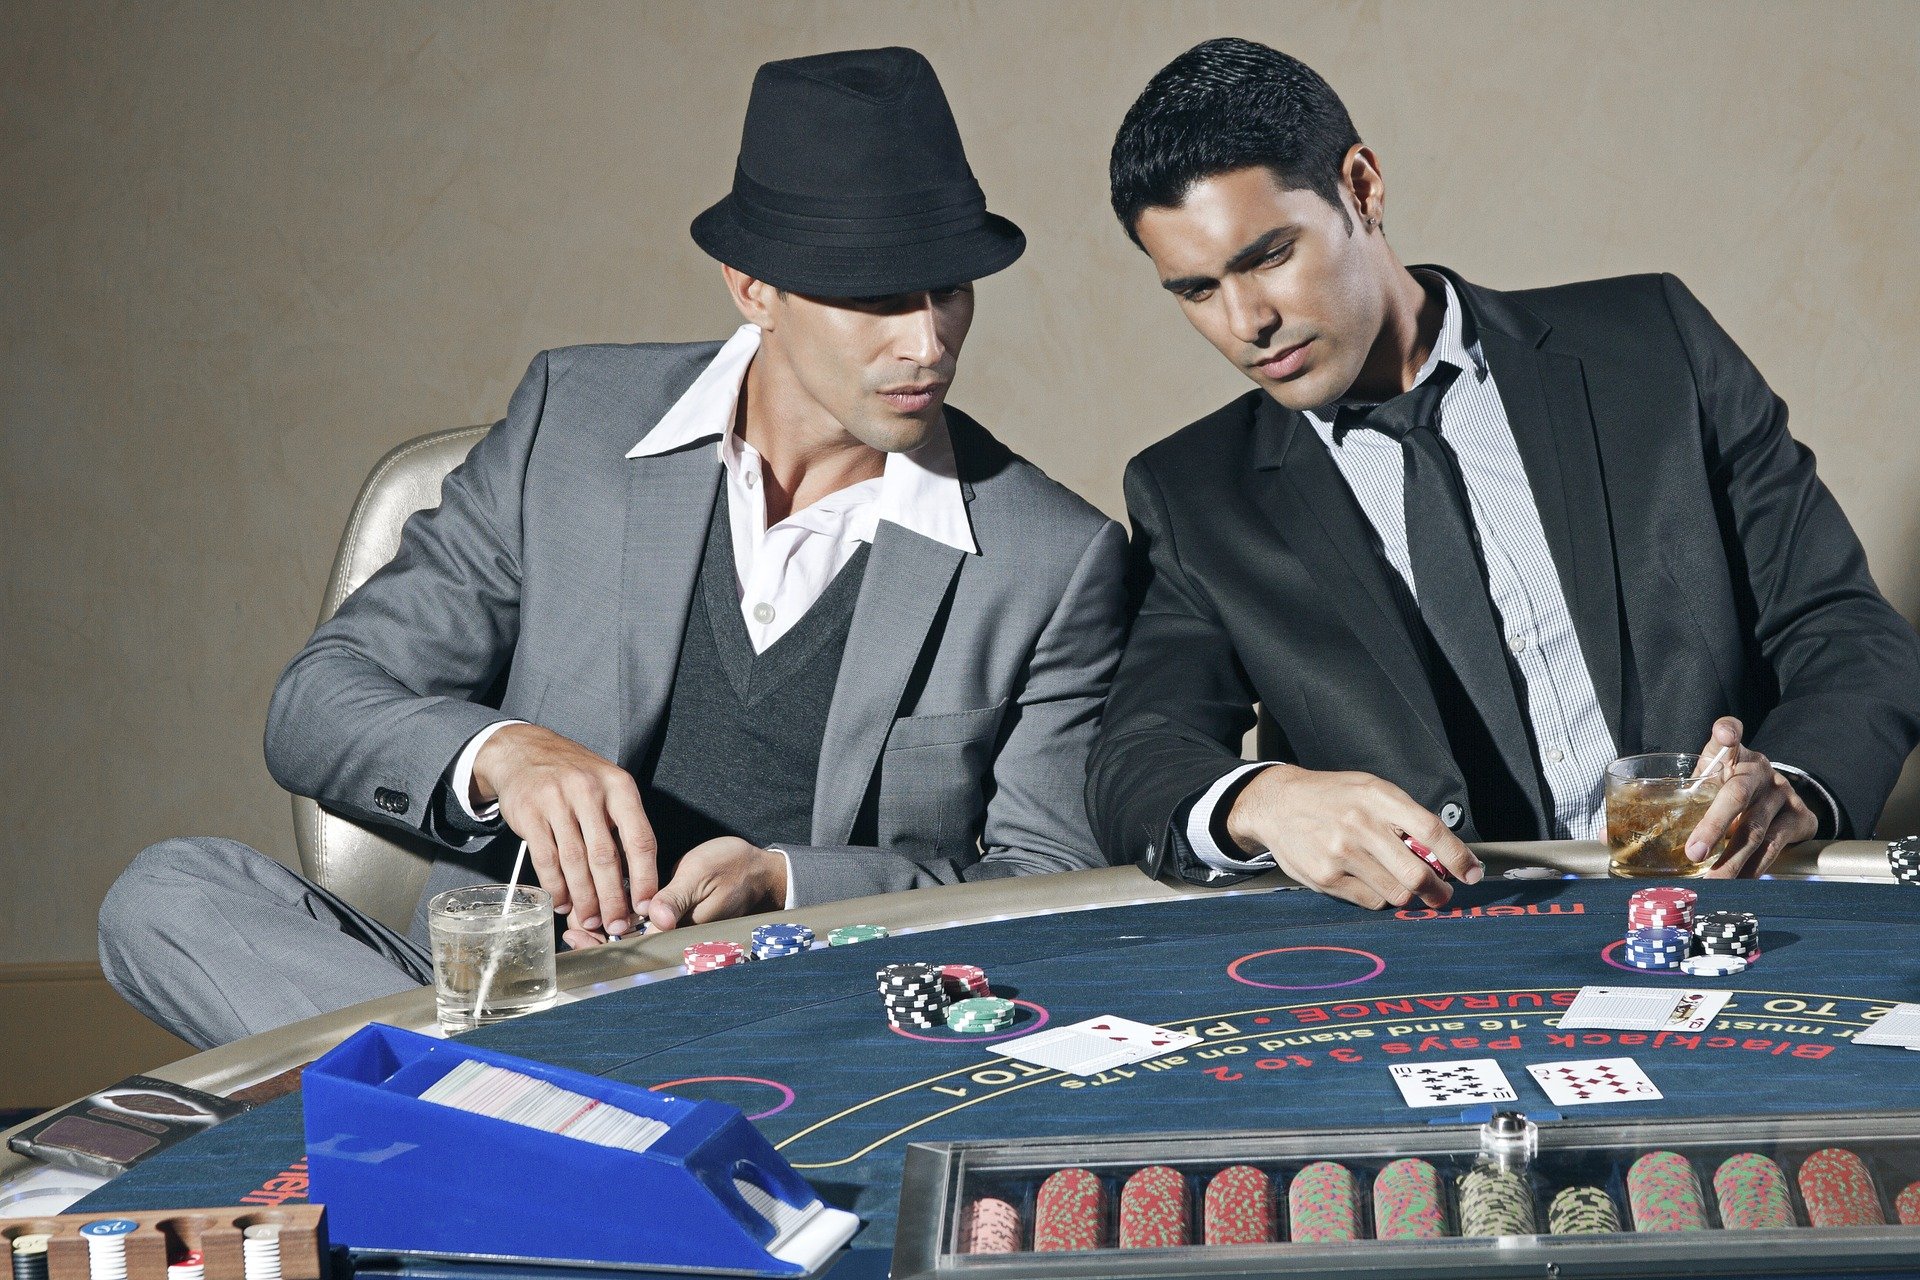 Spielszene am Blackjack Tisch mit zwei Männdern in Anzügen.